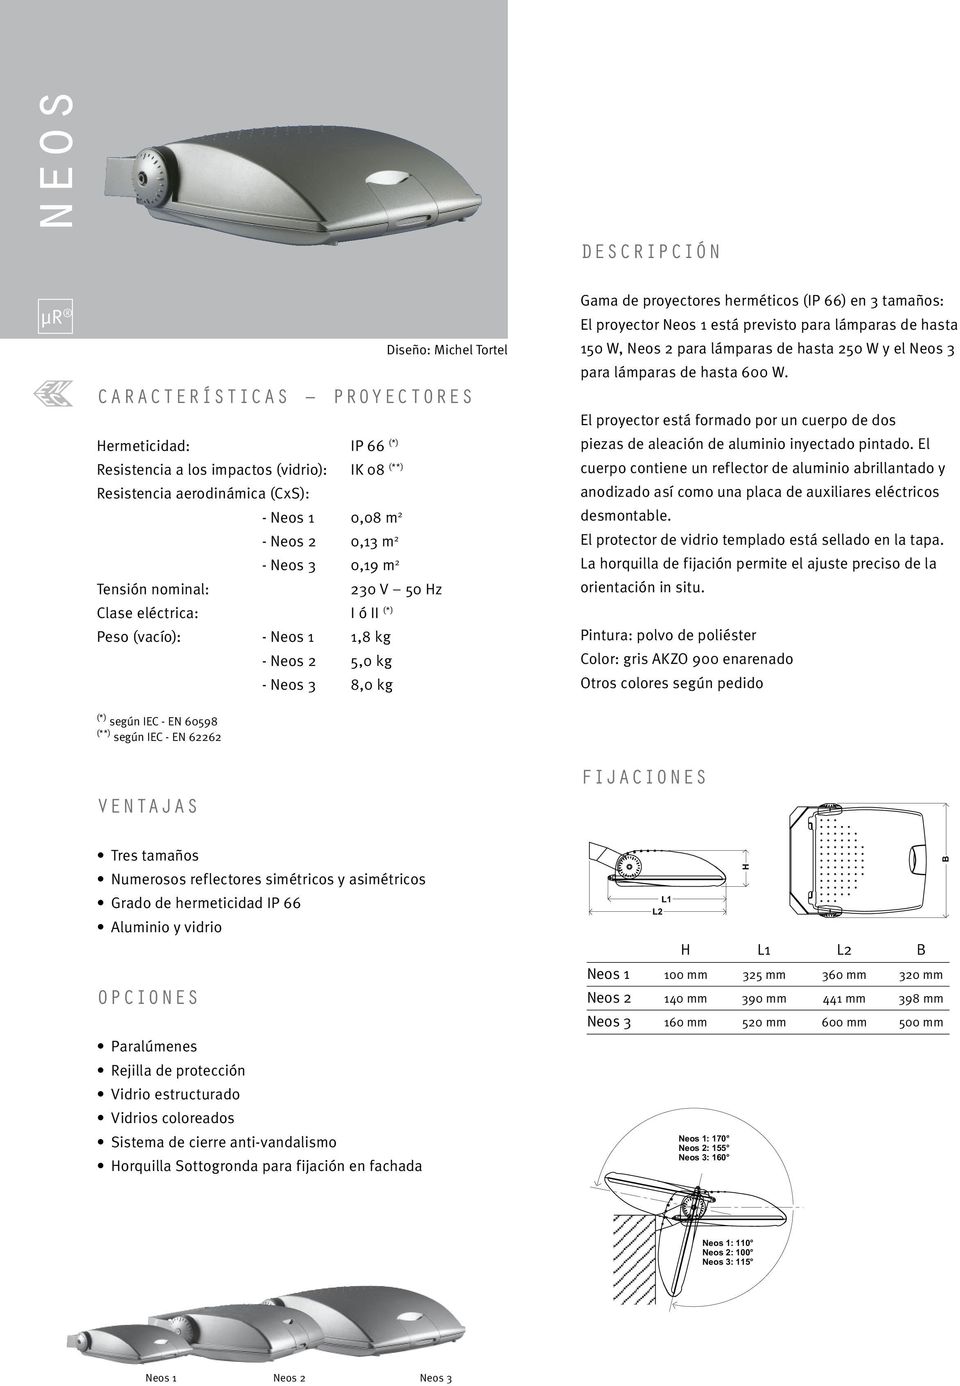 tamaños: El proyector Neos 1 está previsto para lámparas de hasta 150 W, Neos 2 para lámparas de hasta 250 W y el Neos 3 para lámparas de hasta 600 W.